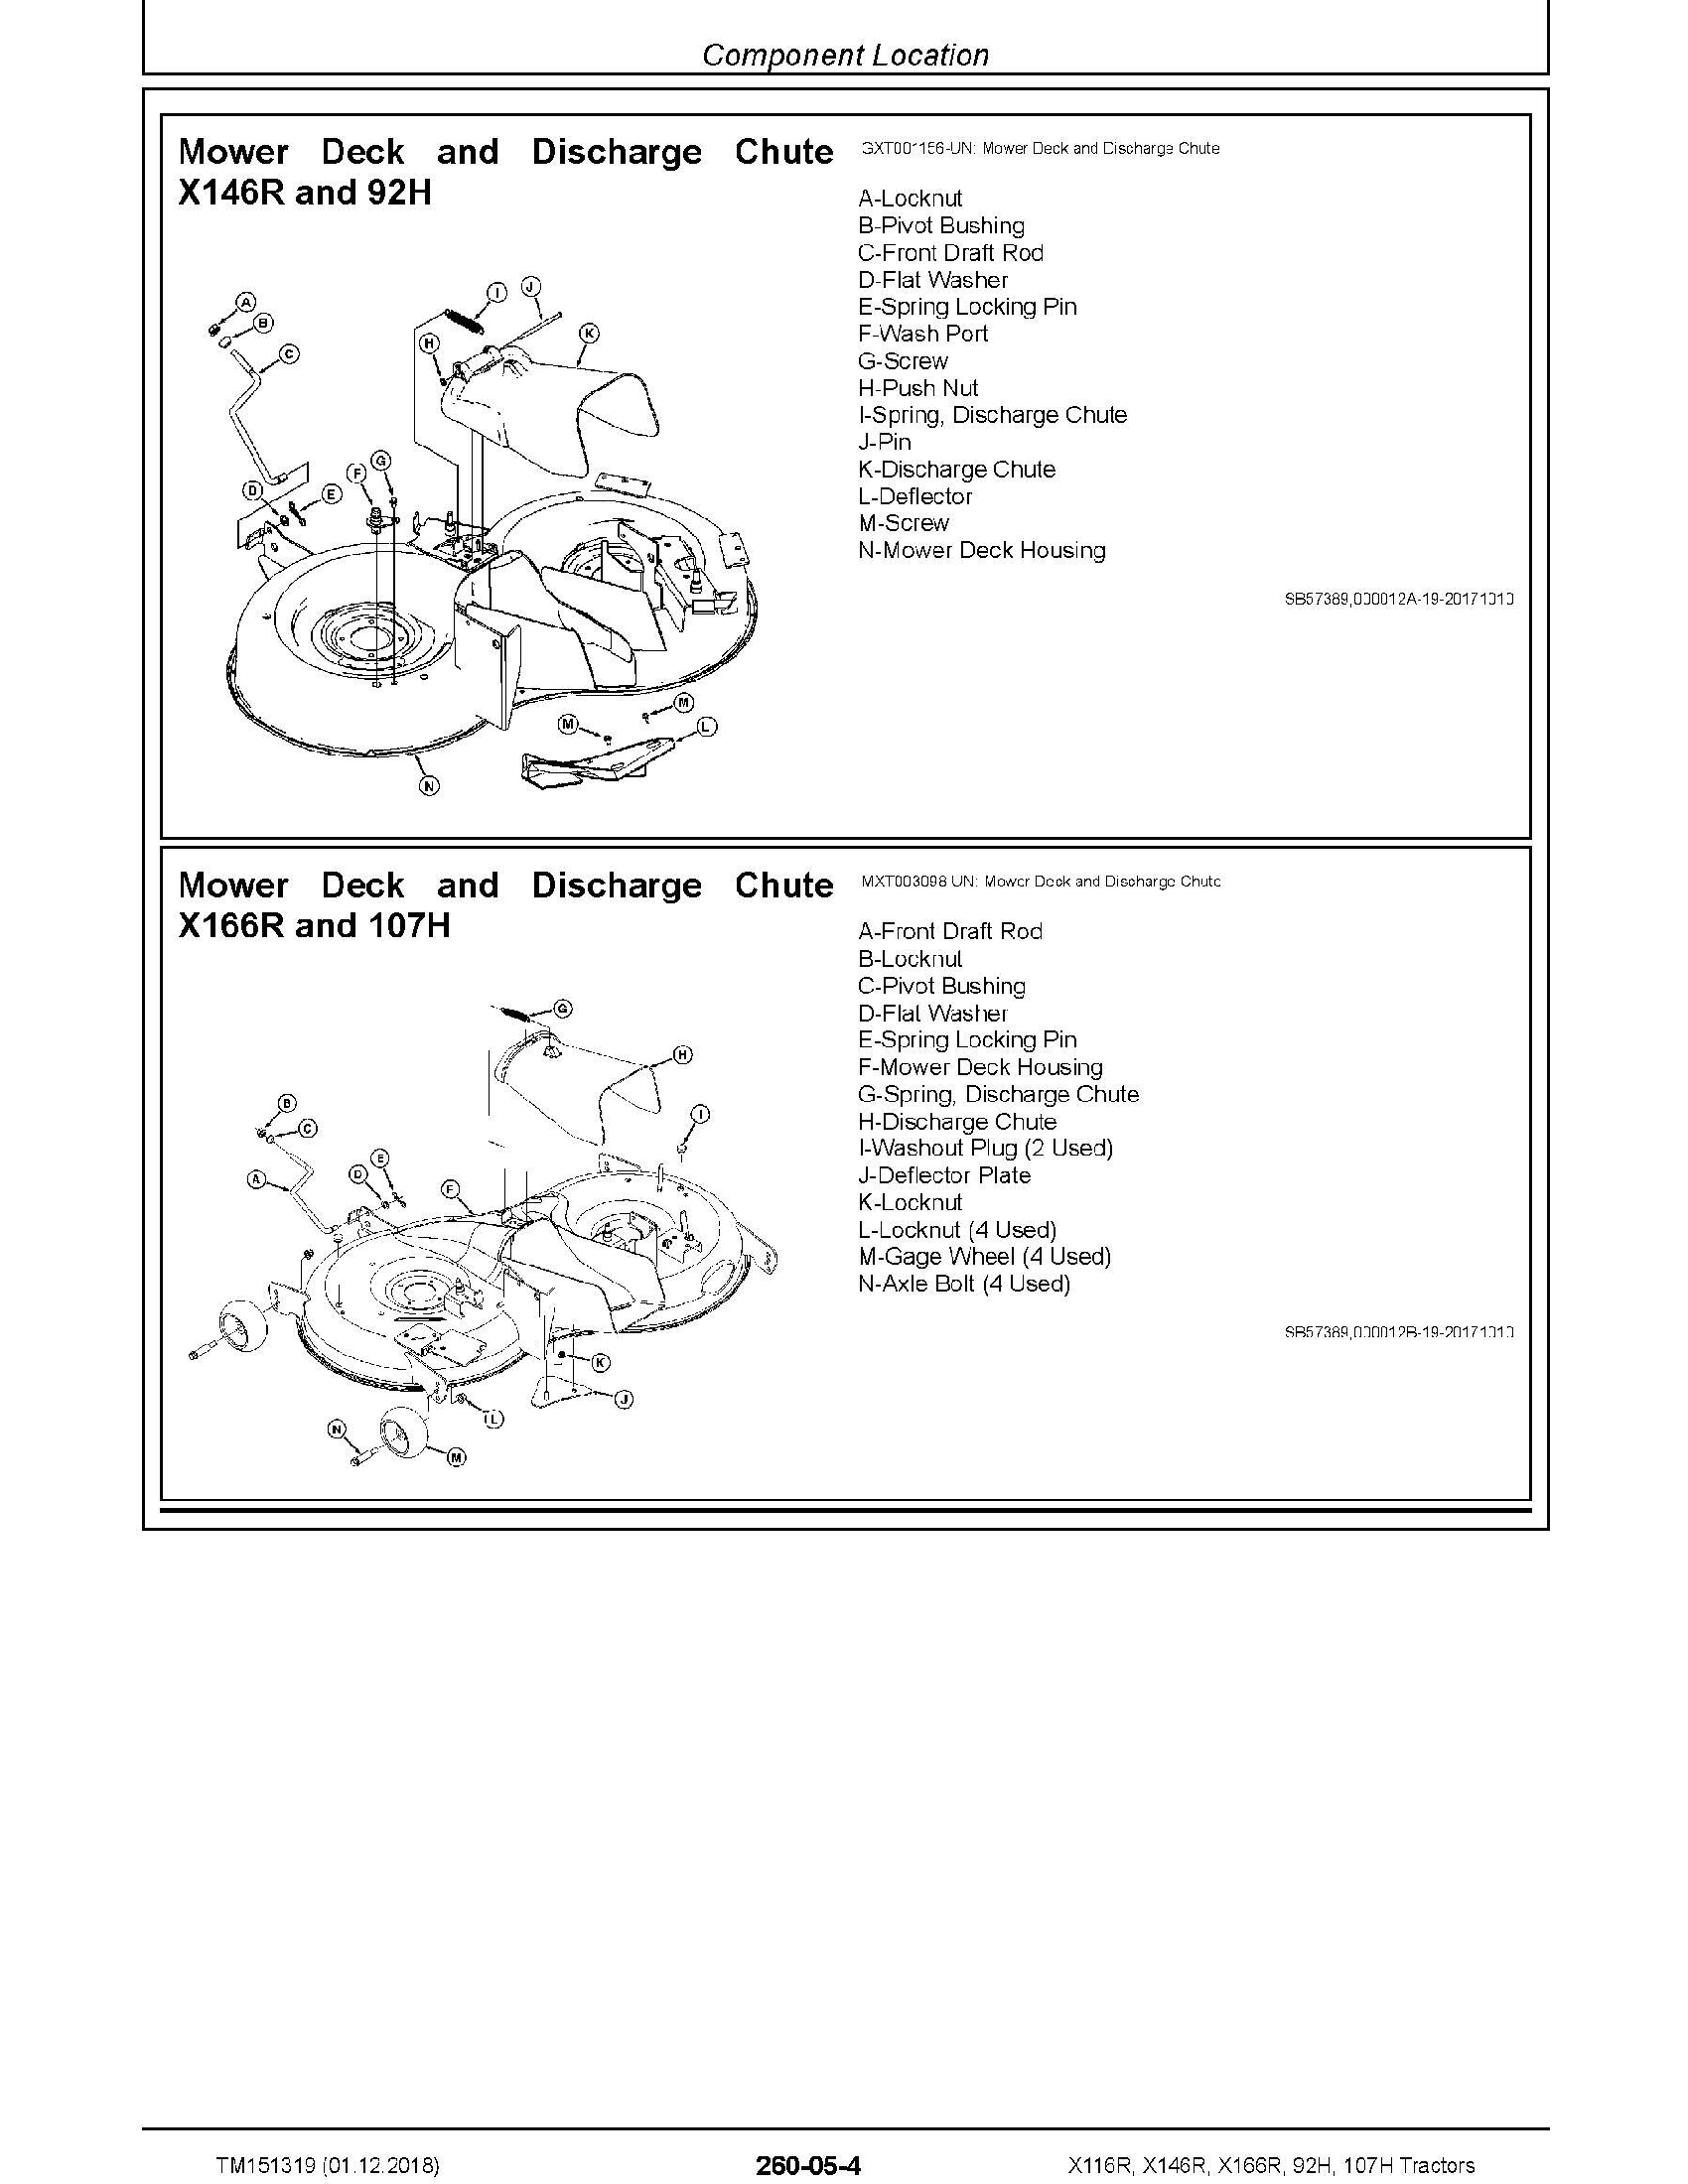 John Deere 107H manual pdf